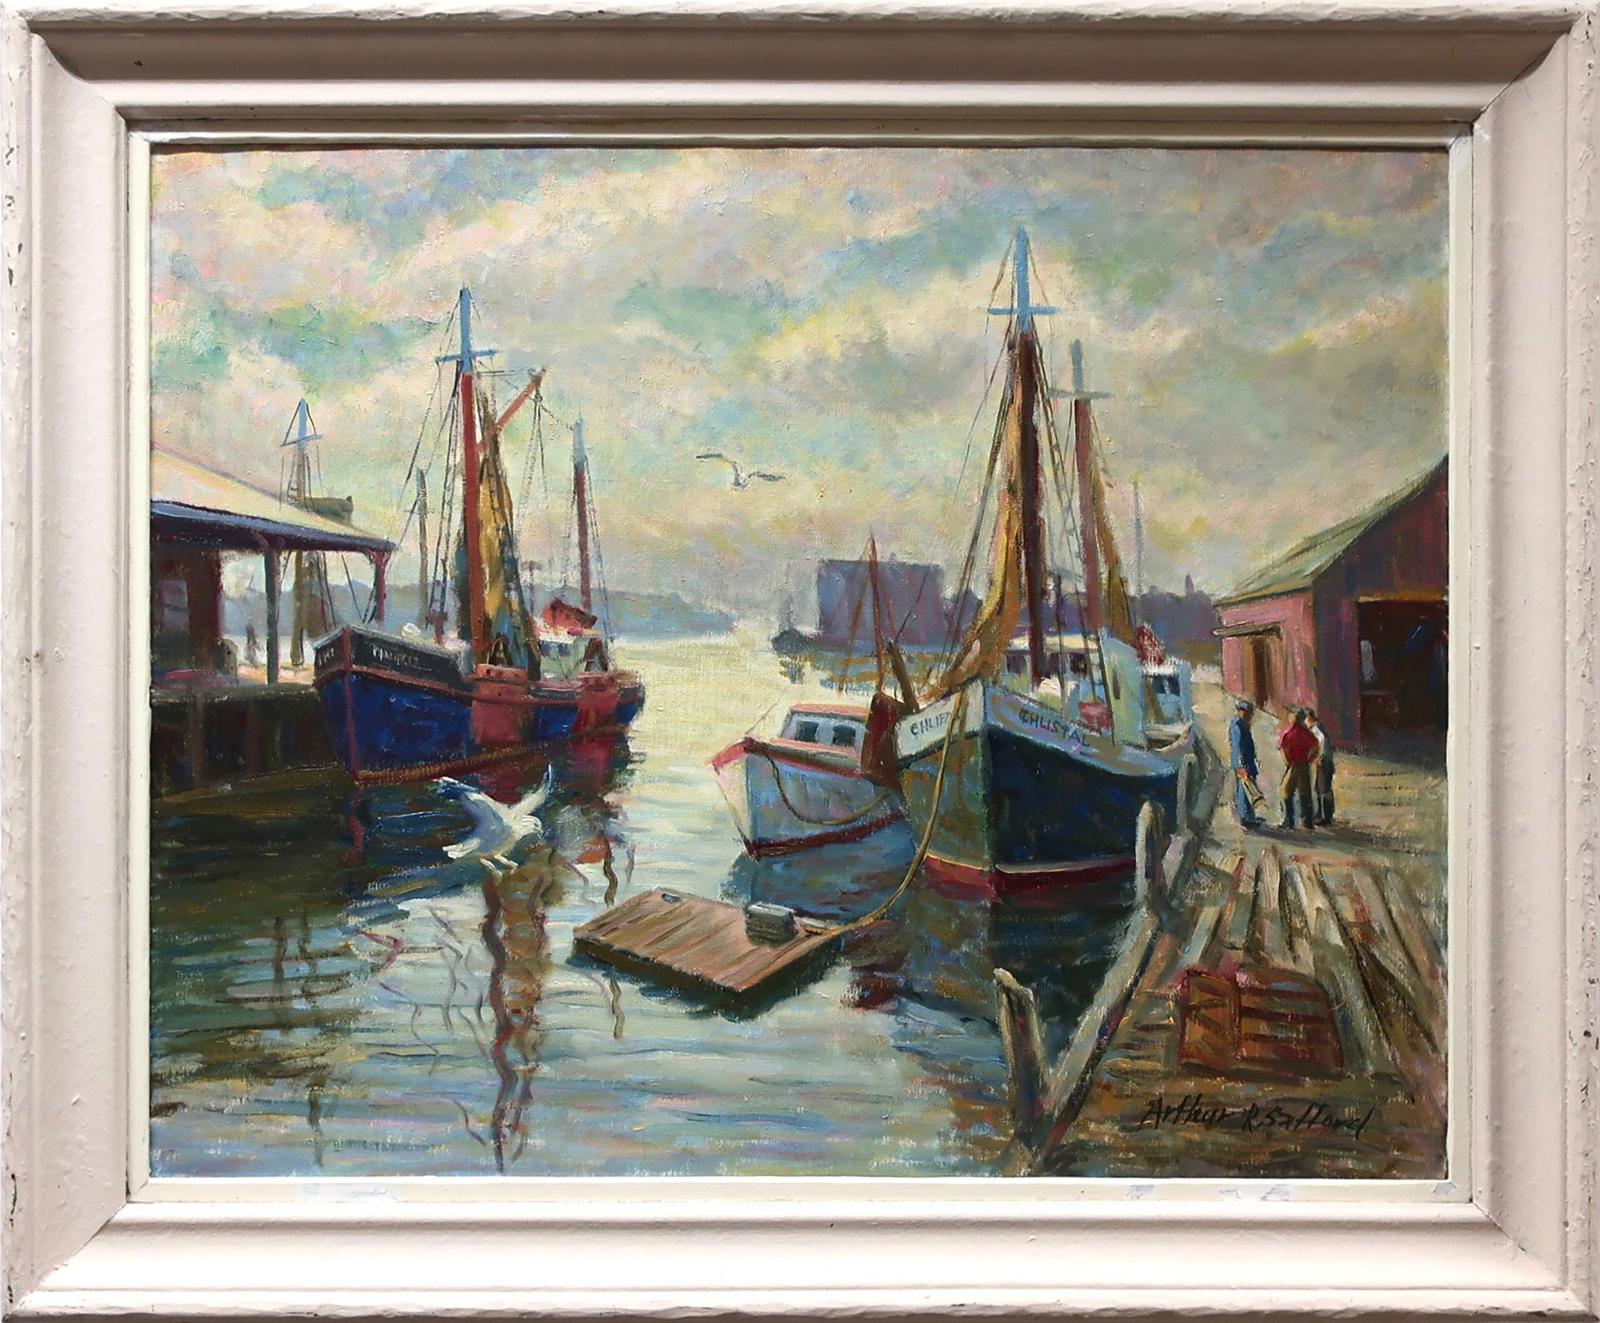 Arthur R. Safford (1900-1992) - Untitled (Wharf Study)